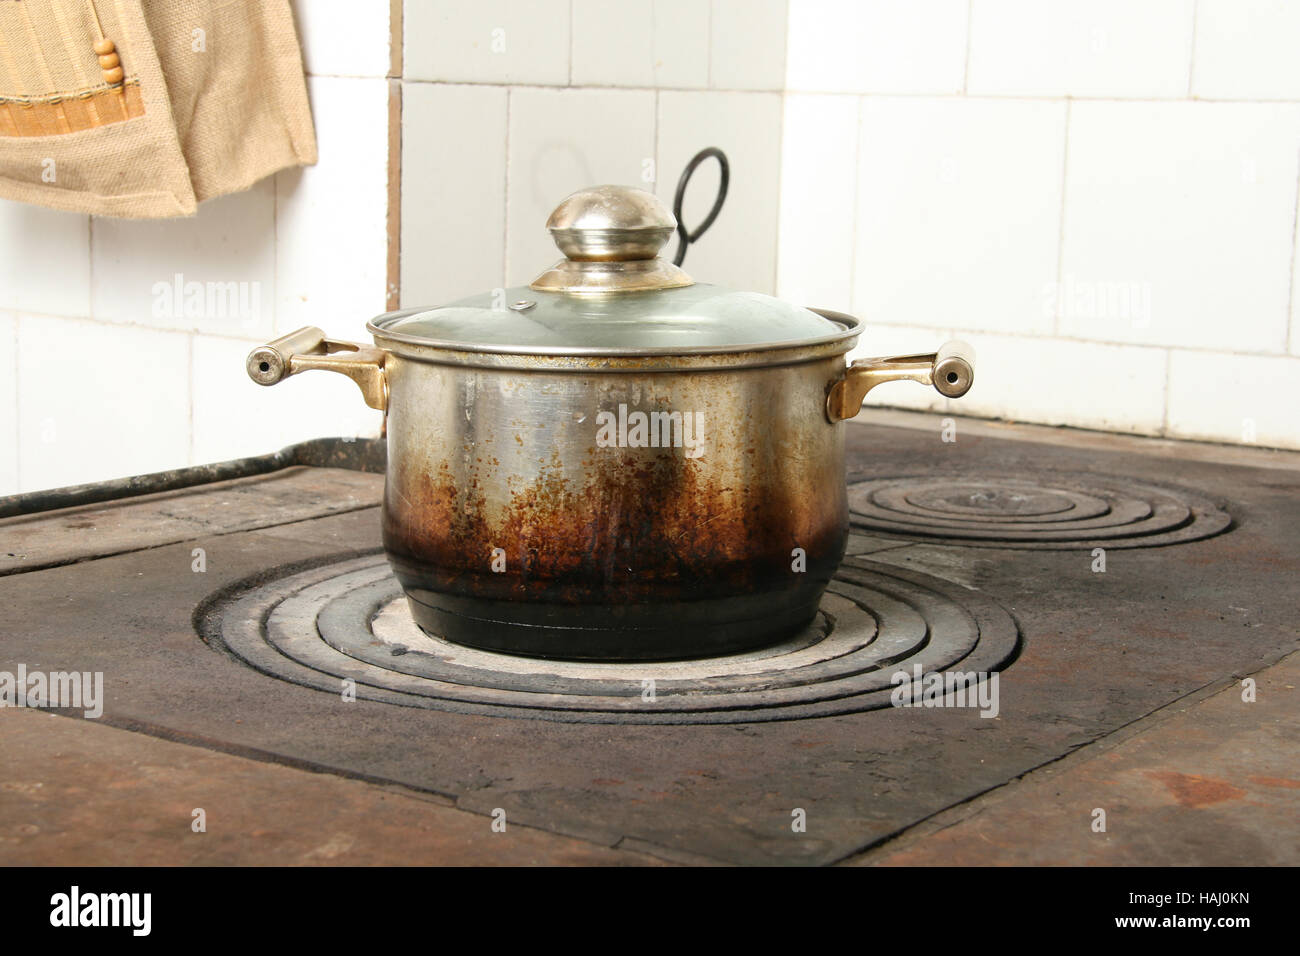 Le pot de la cuisine ancienne cuisine cuisinière Banque D'Images